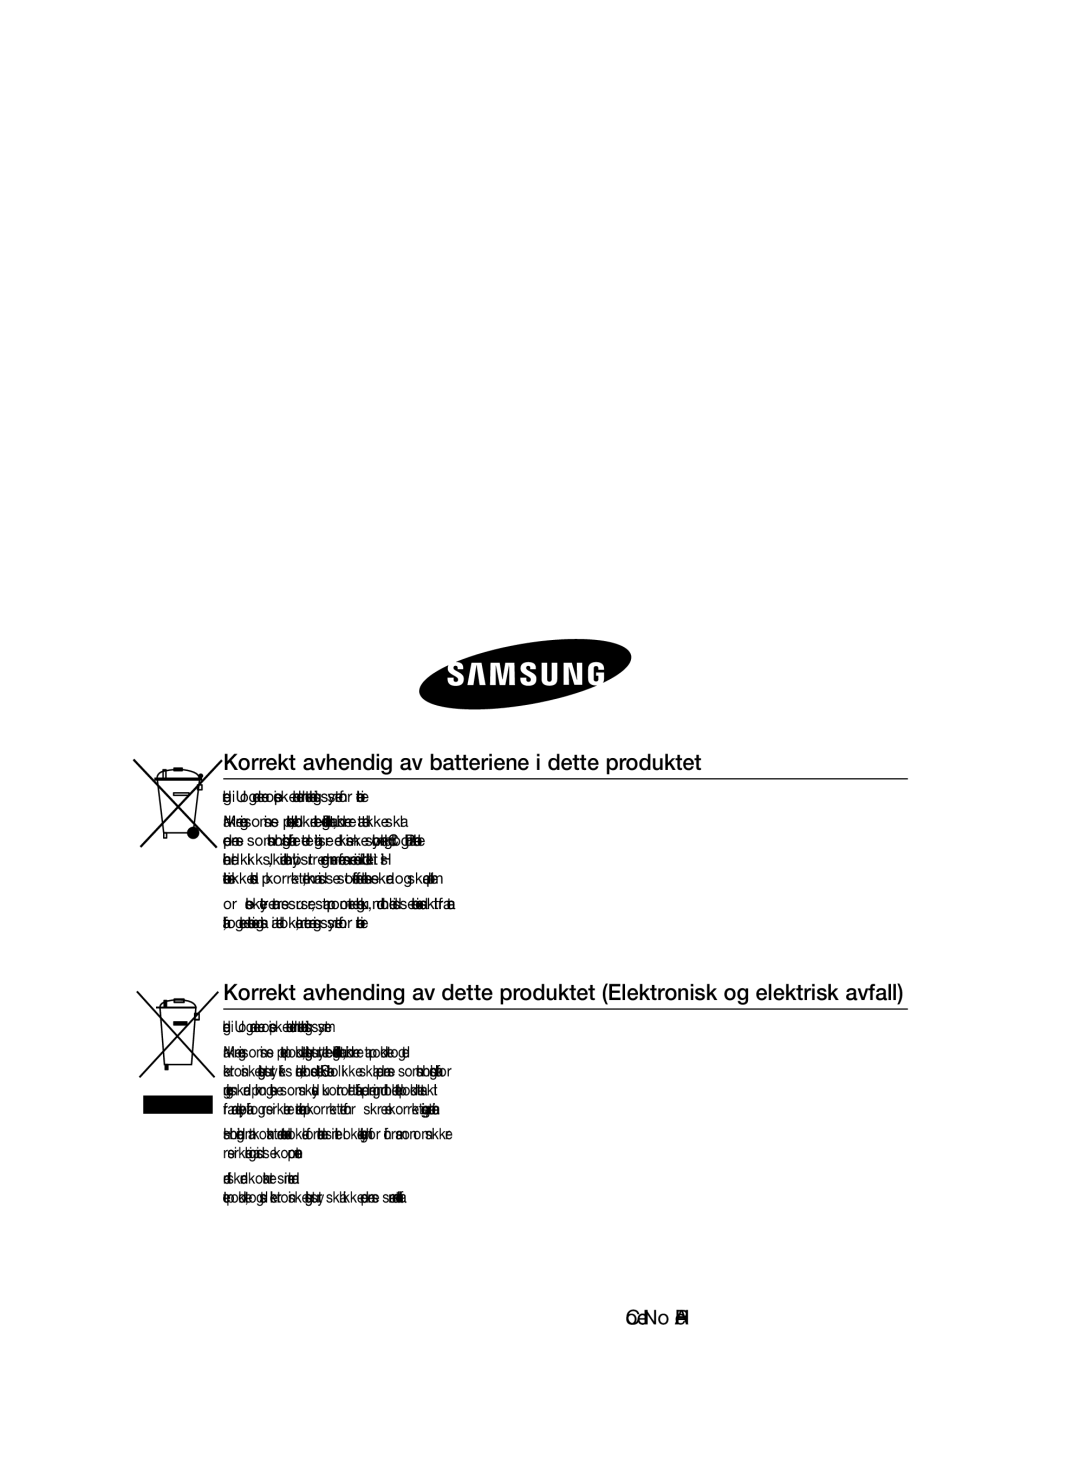 Samsung MM-E460D/XE manual Korrekt avhendig av batteriene i dette produktet, Code No. AH68-02549ERev 